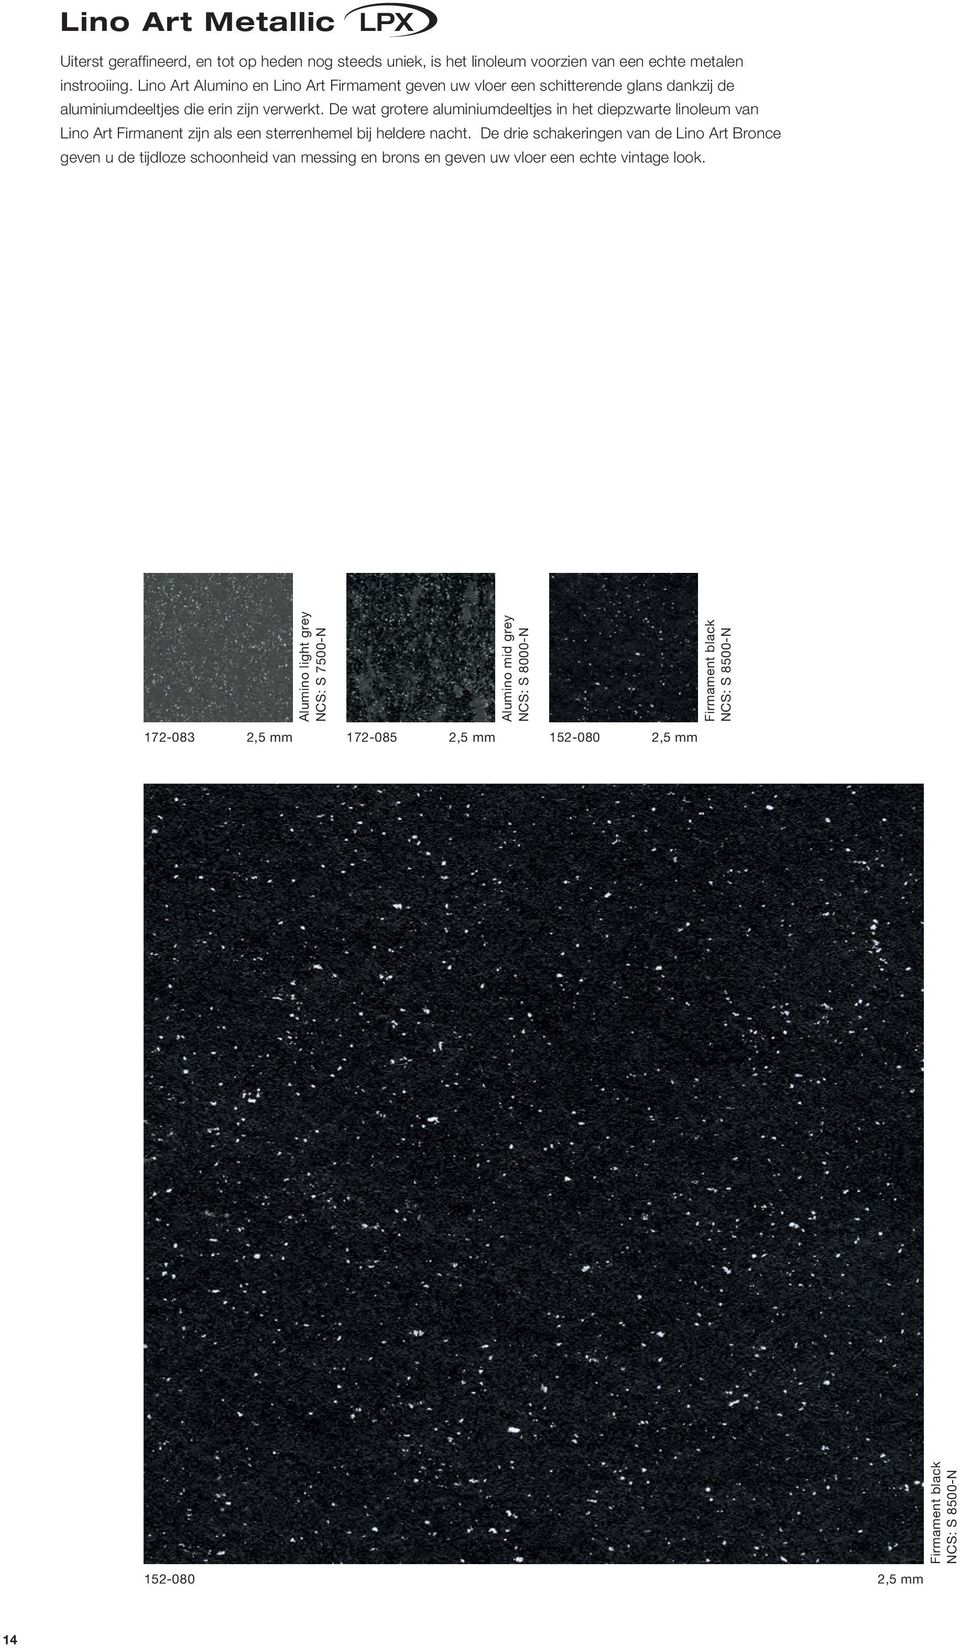 De wat grotere aluminiumdeeltjes in het diepzwarte linoleum van Lino Art Firmanent zijn als een sterrenhemel bij heldere nacht.